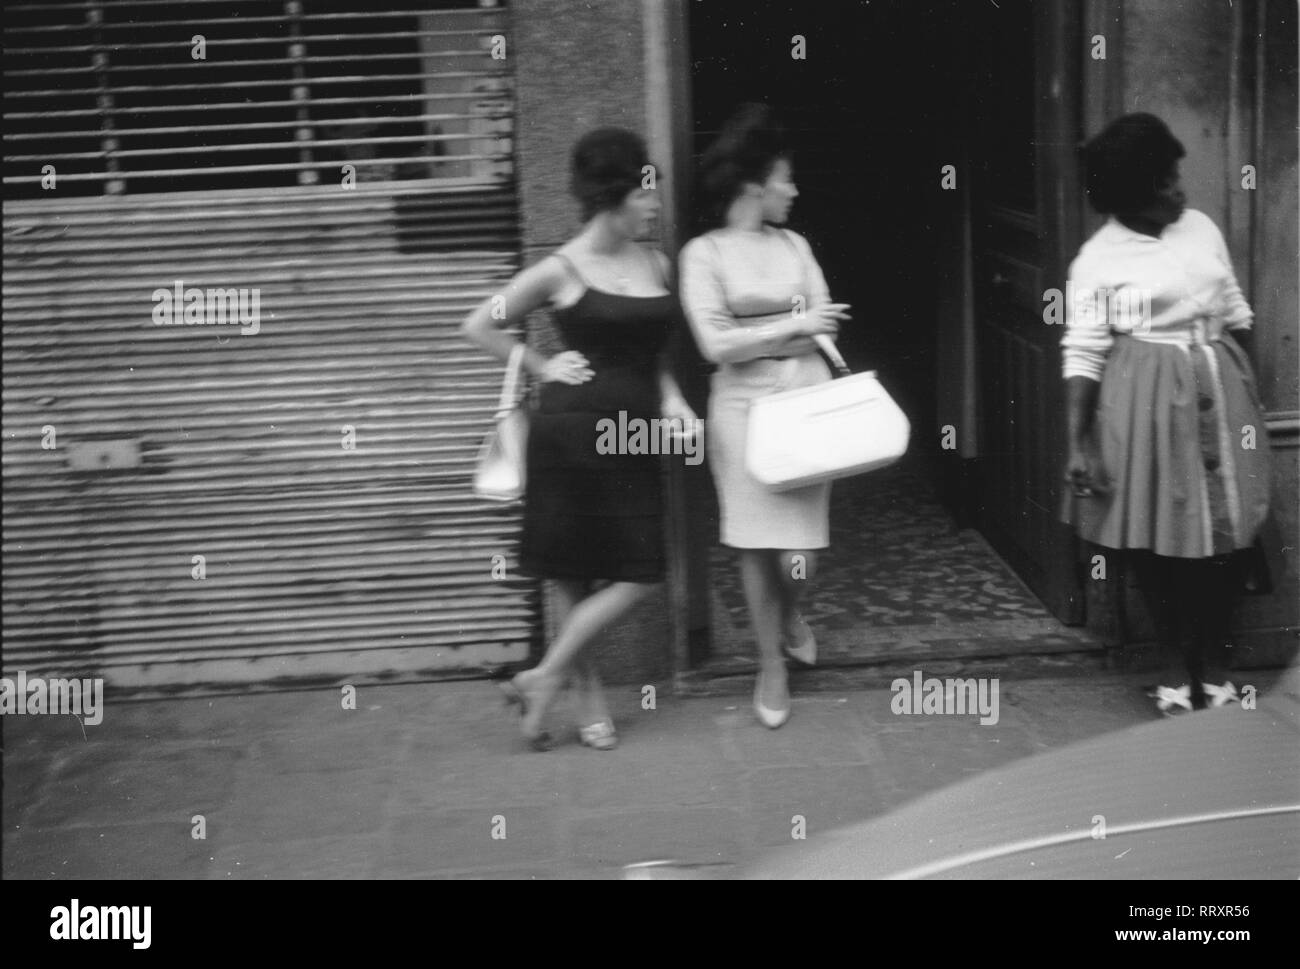 Frankreich - France in 1965. Three Ladies in front of a house. Photo by Erich Andres Frankreich ca. 1965, Frauen vor einem Geschäft Stock Photo